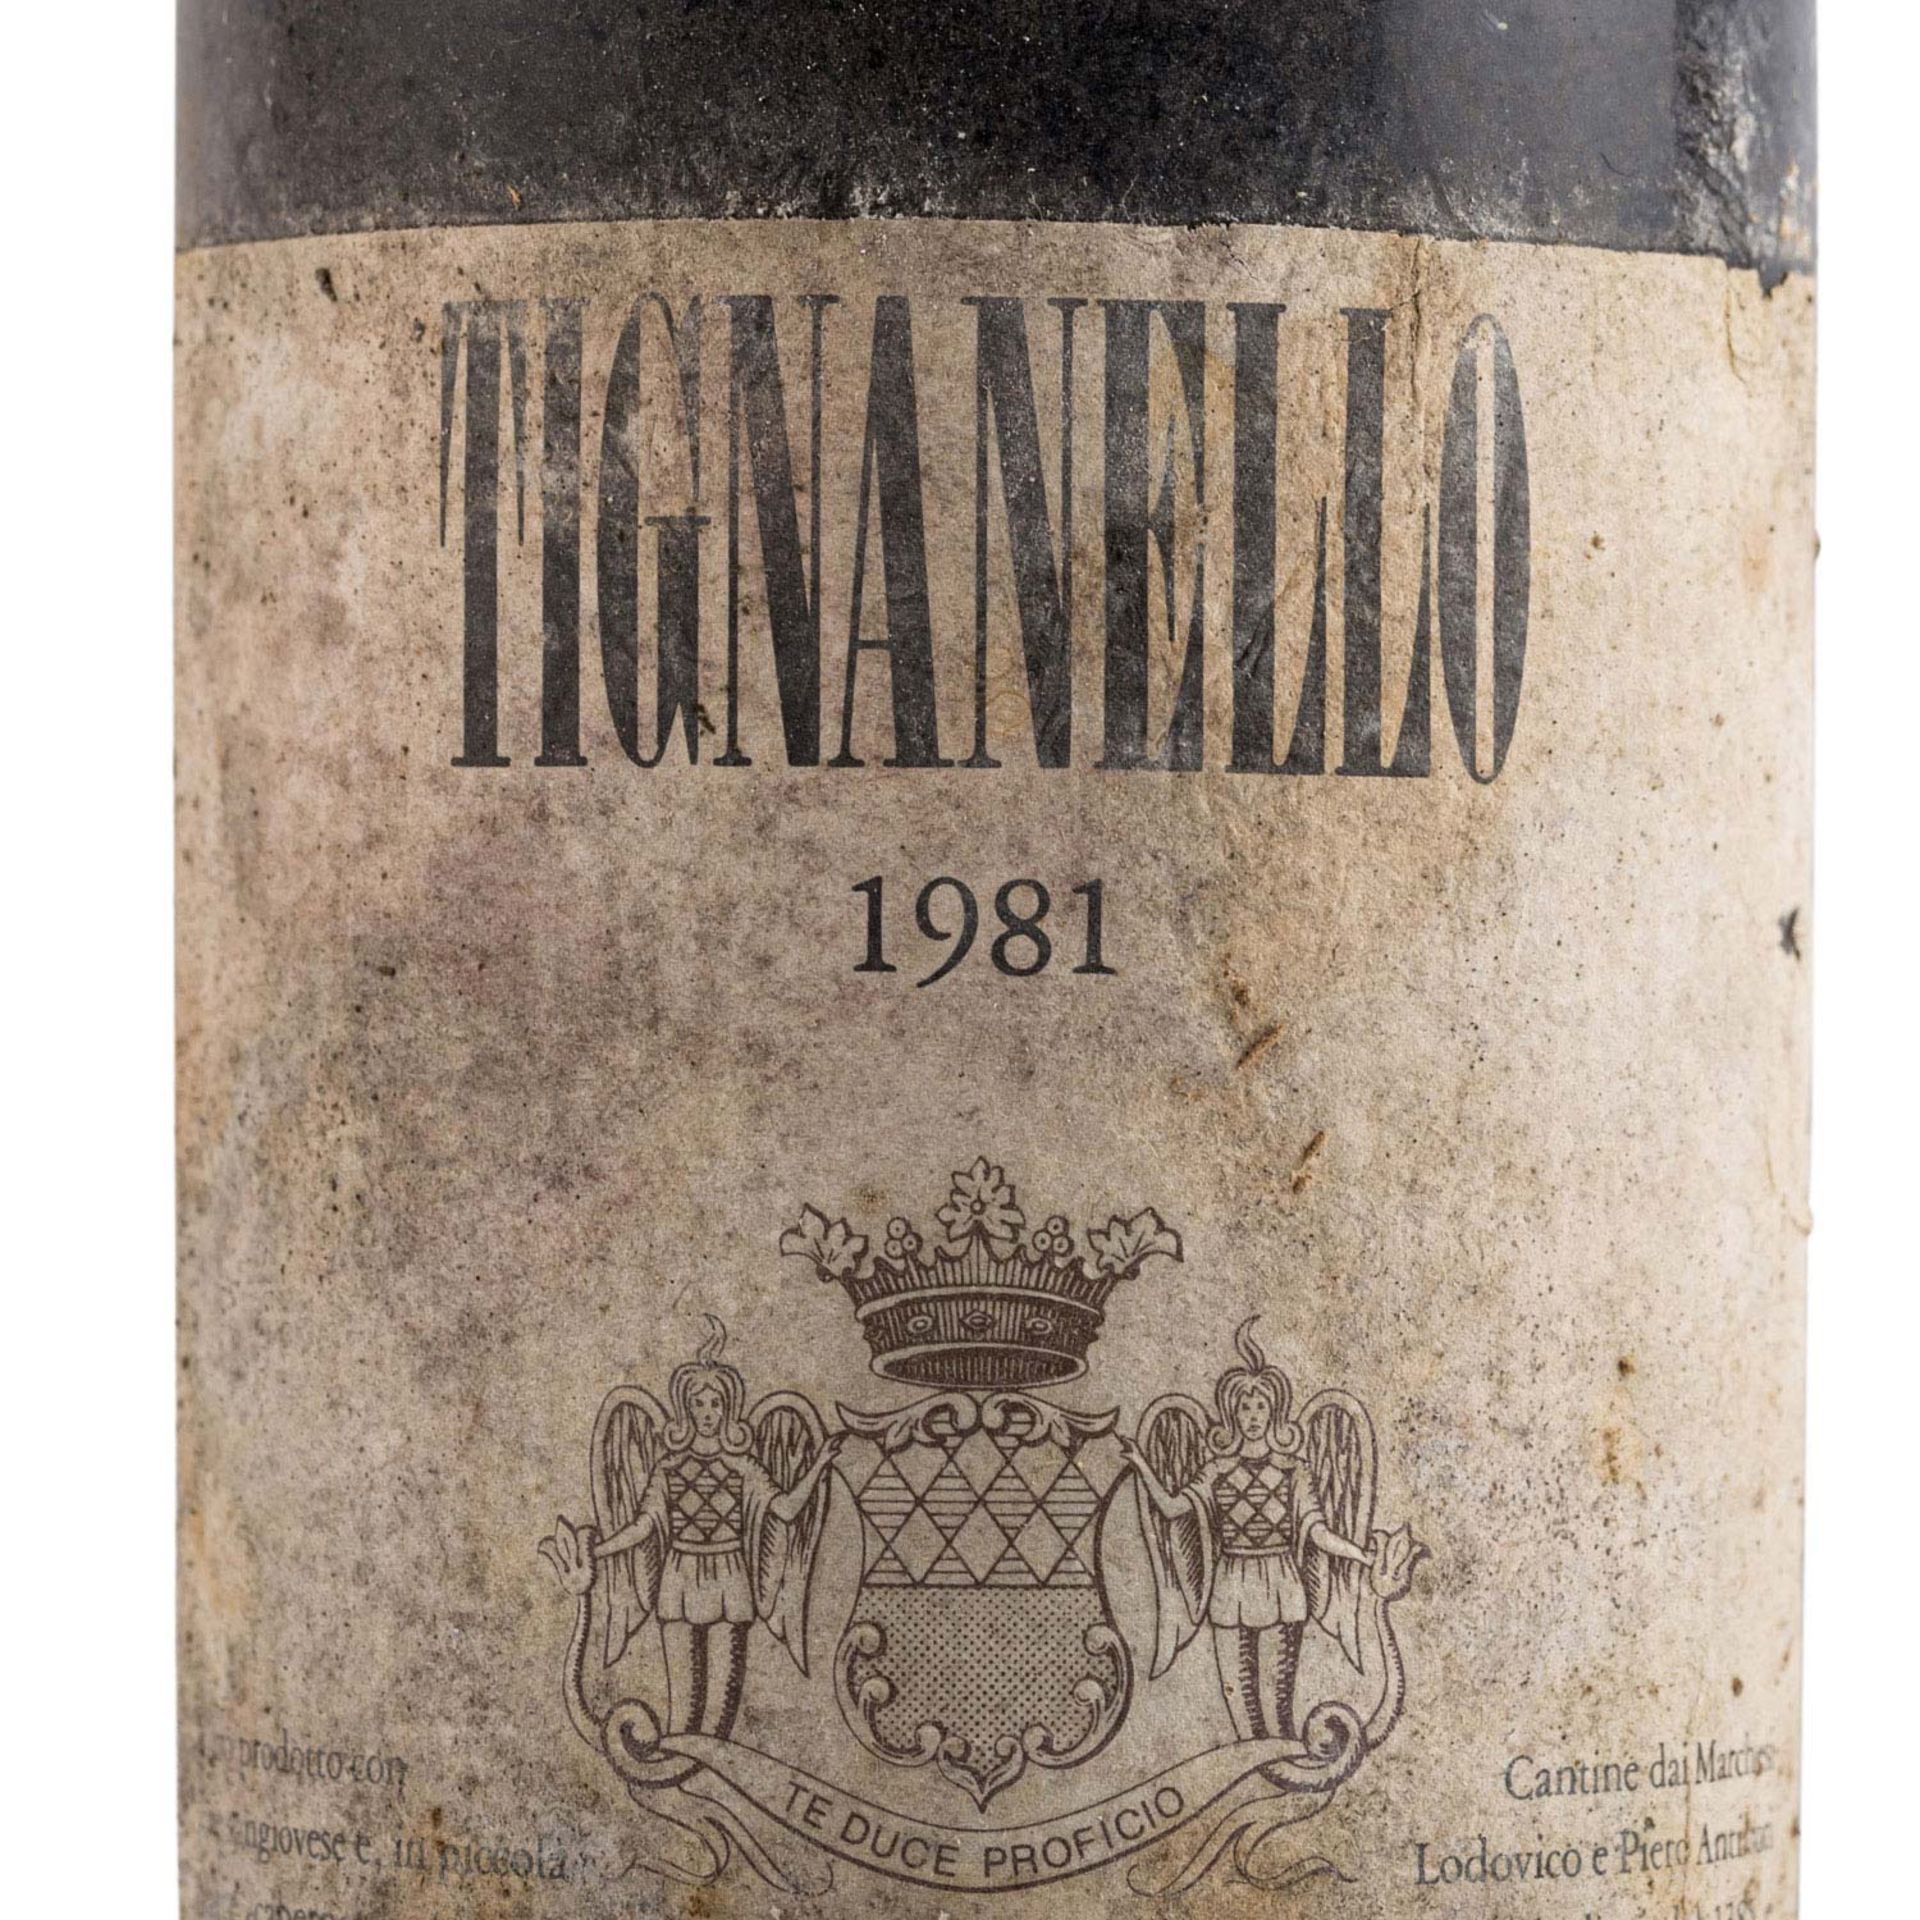 MARCHESI ANTINORI 1 Flasche TIGNANELLO 1981 - Bild 2 aus 5